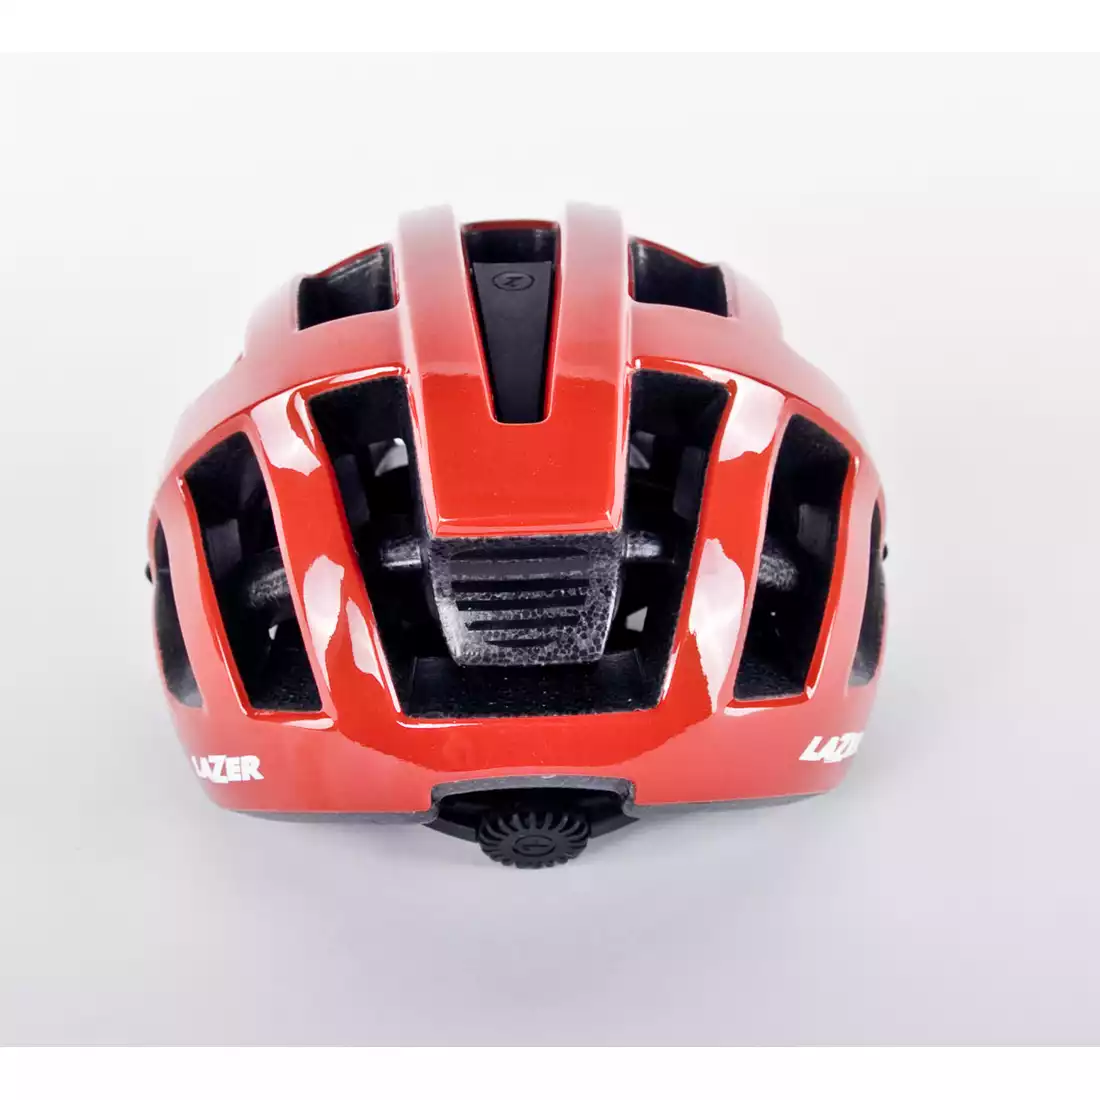 LAZER Compact kask rowerowy czerwony połysk